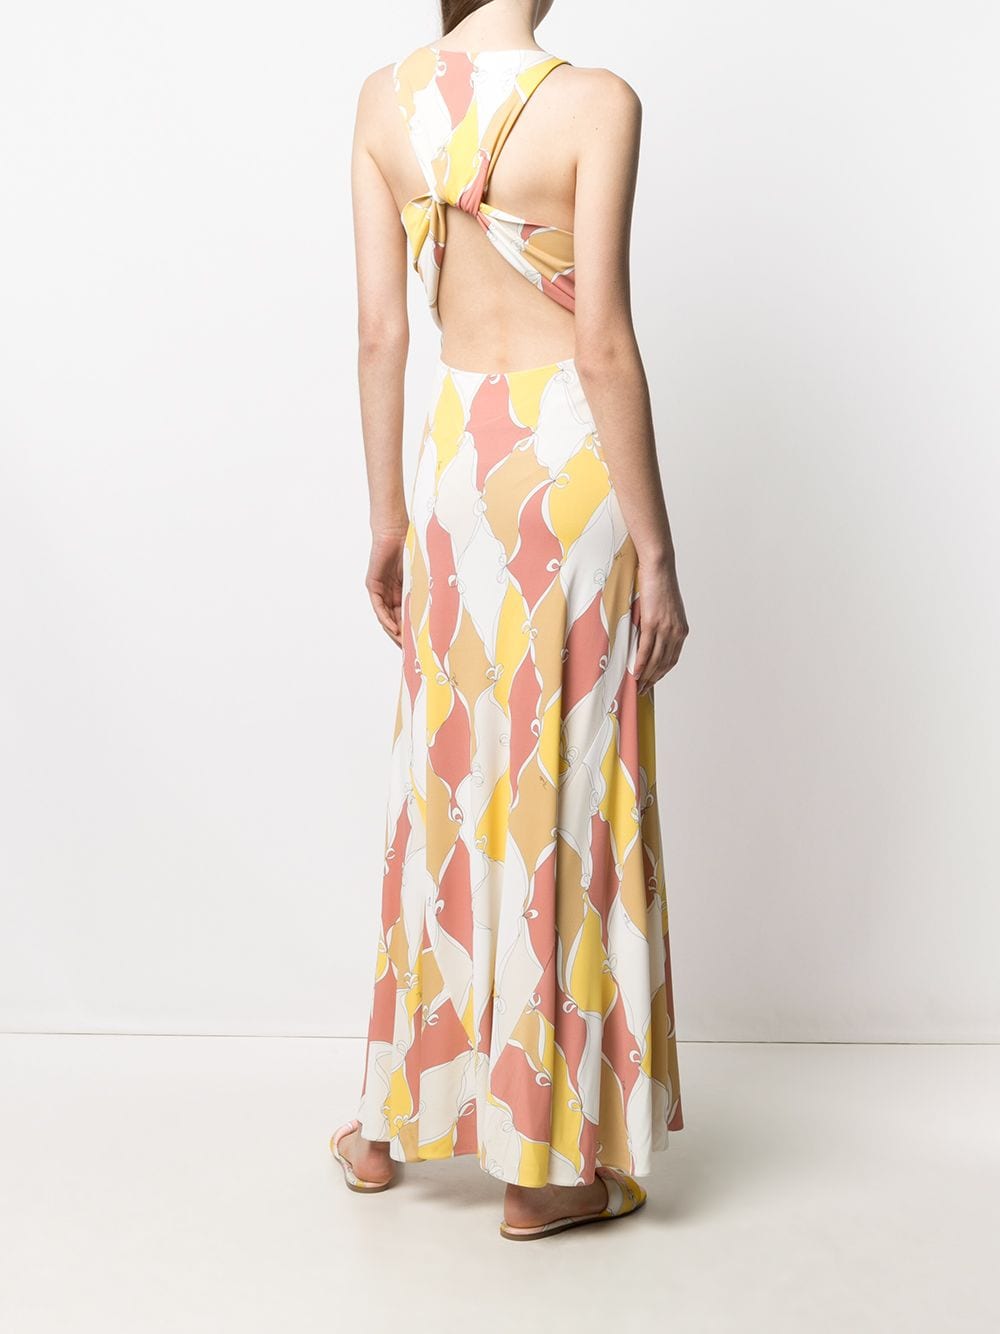 фото Emilio pucci длинное платье с принтом losanghe